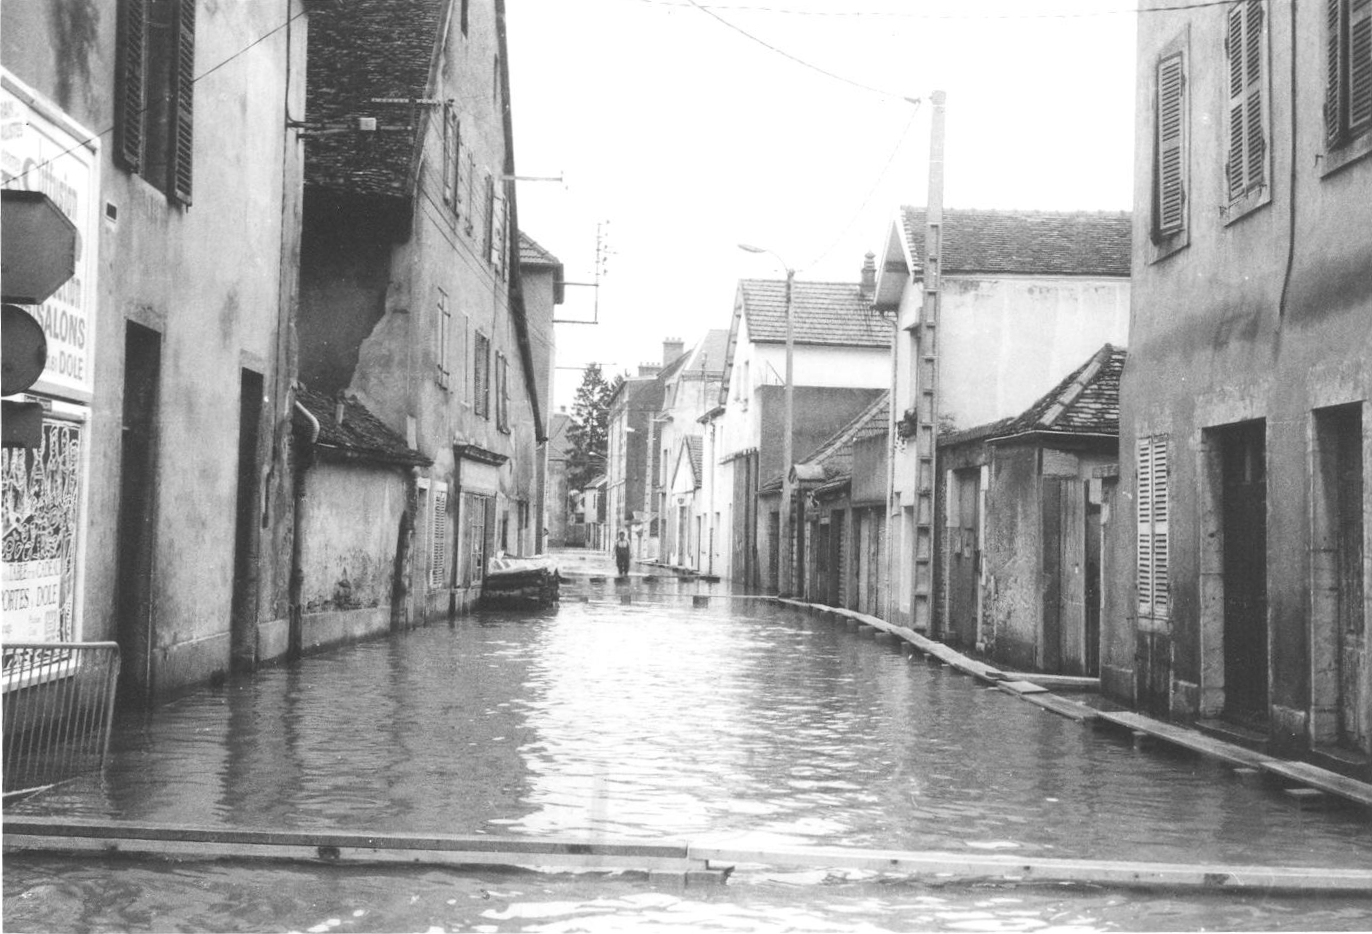 Crue de la Saône en 1982 à Auxonne